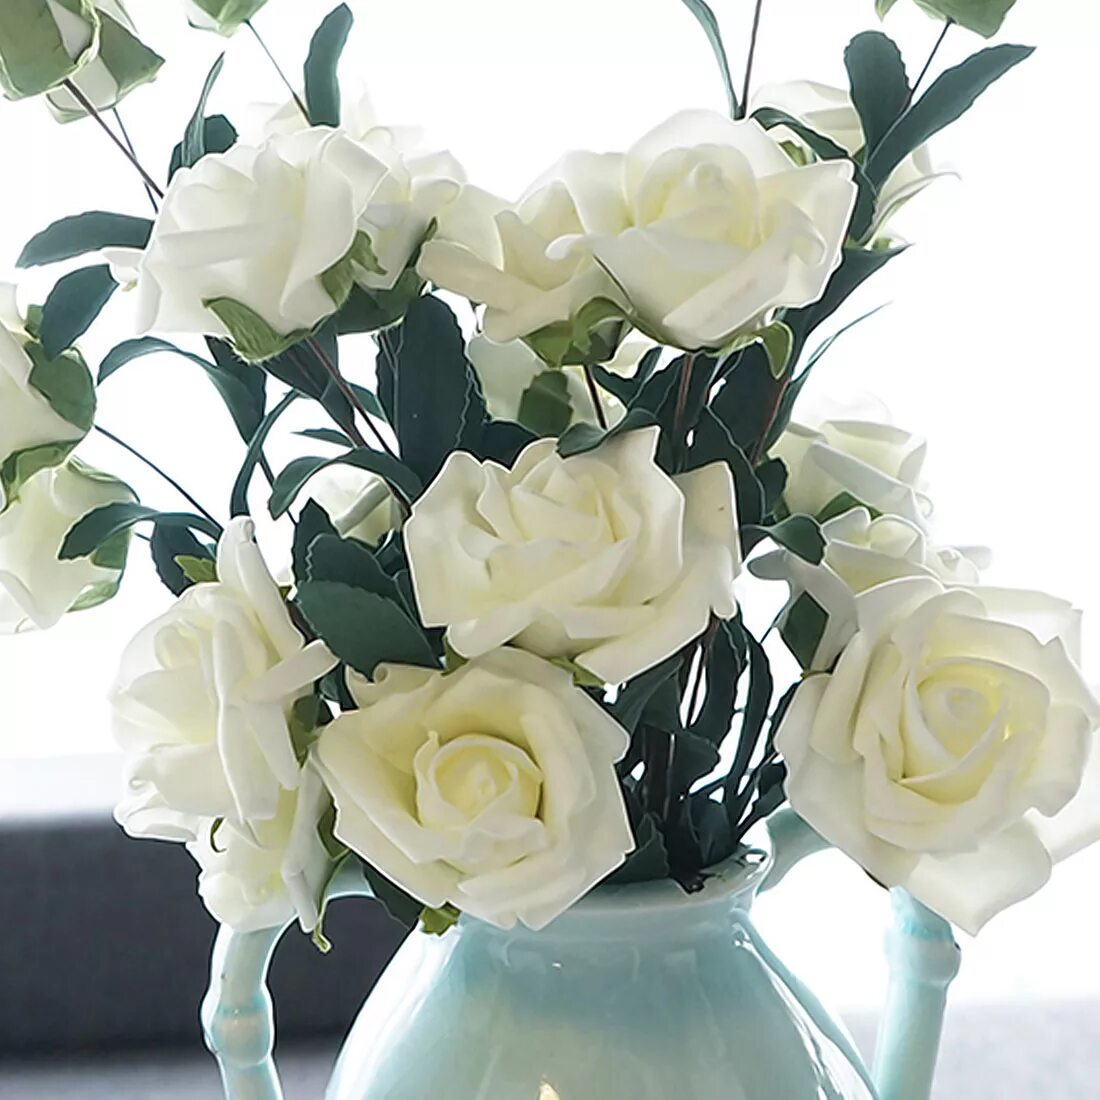 Условия для роз в вазе. Букет белых роз. Белые розы в вазе. Красивые искусственные розы. Букет белых роз в вазе.